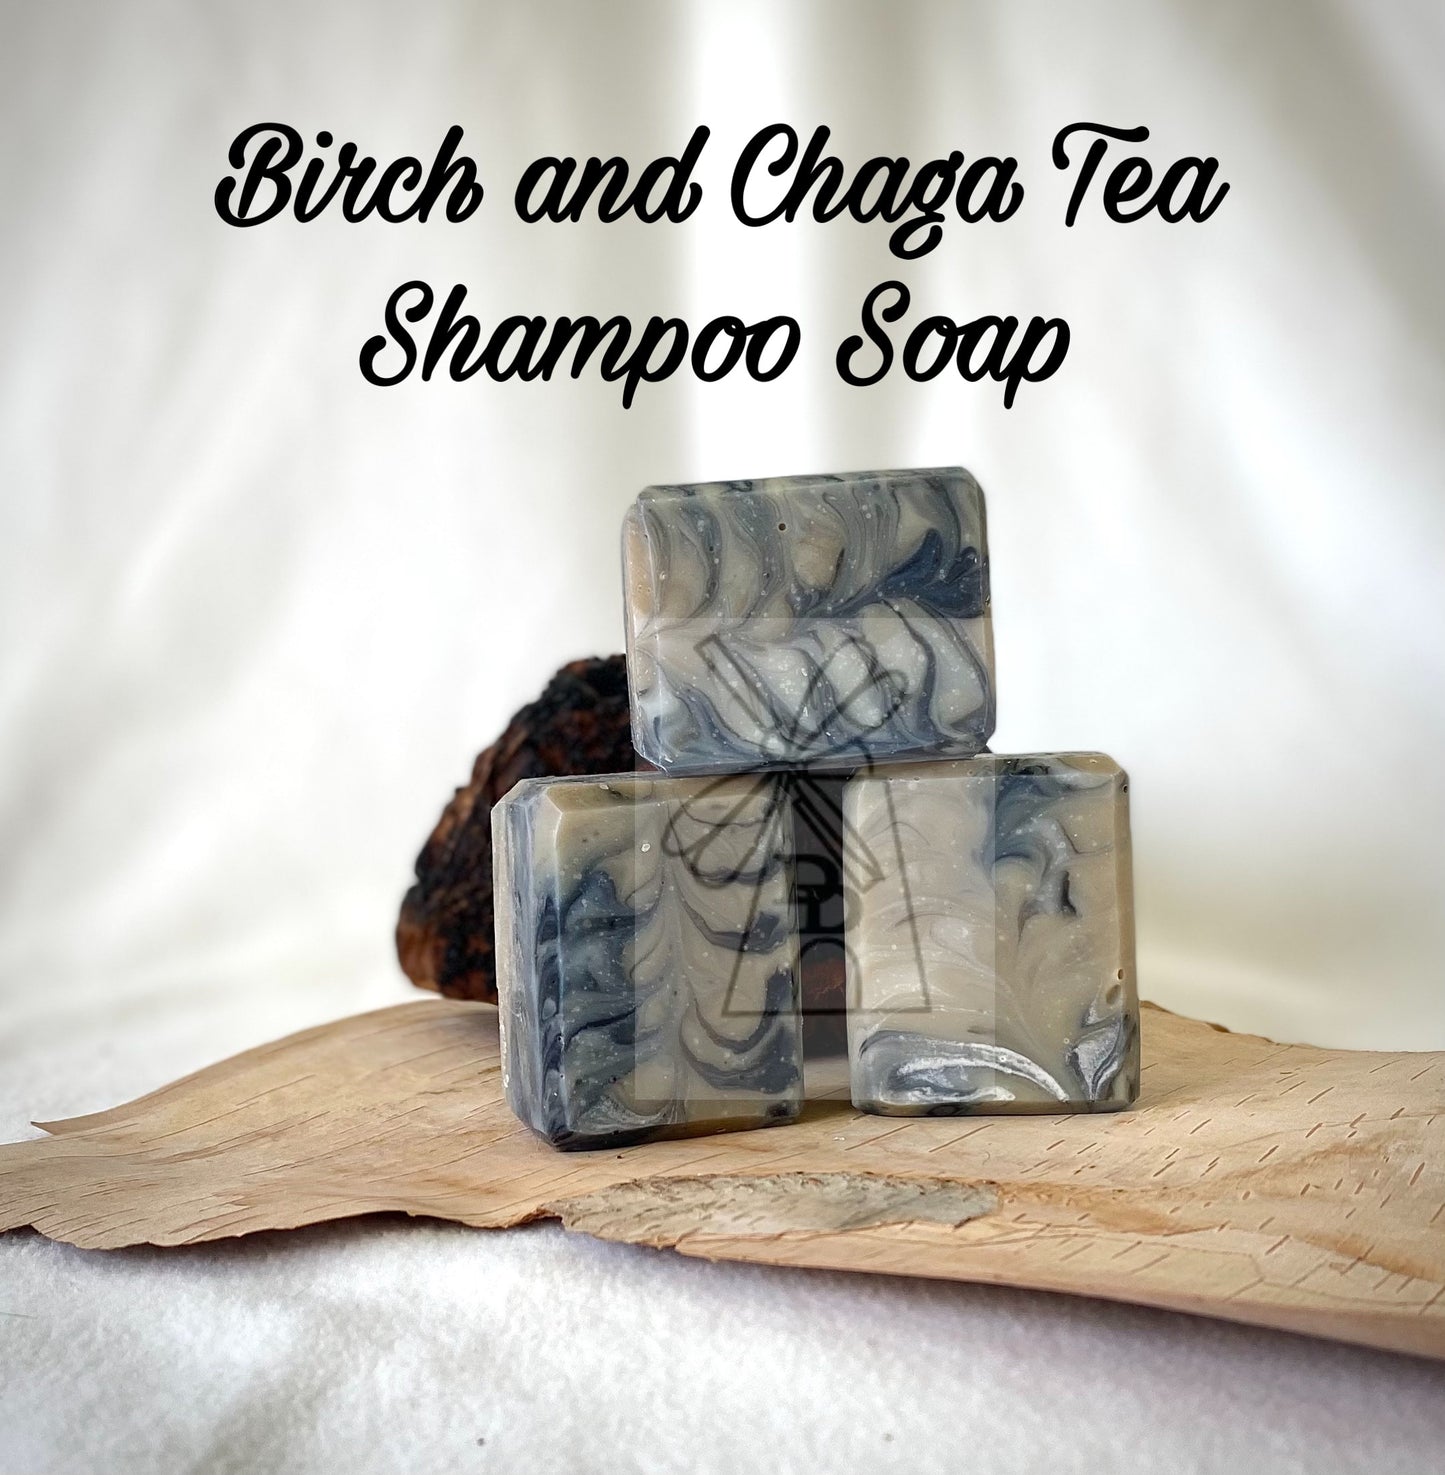 Birch and Chaga Tea - Shampoo Soap